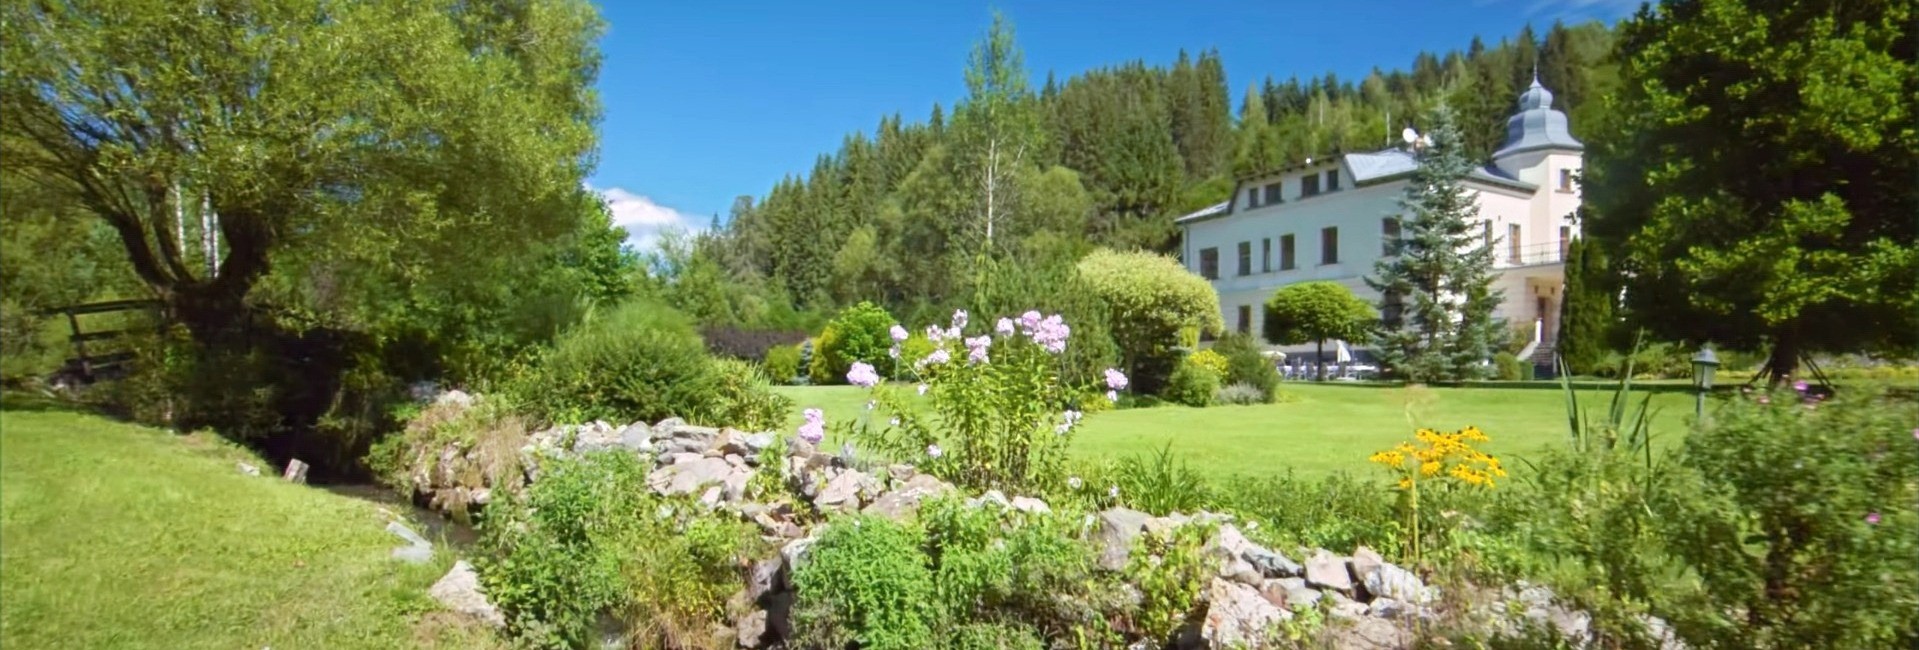 Photo of Villa Andrassy in Podbrezova,Slovakia from the garden